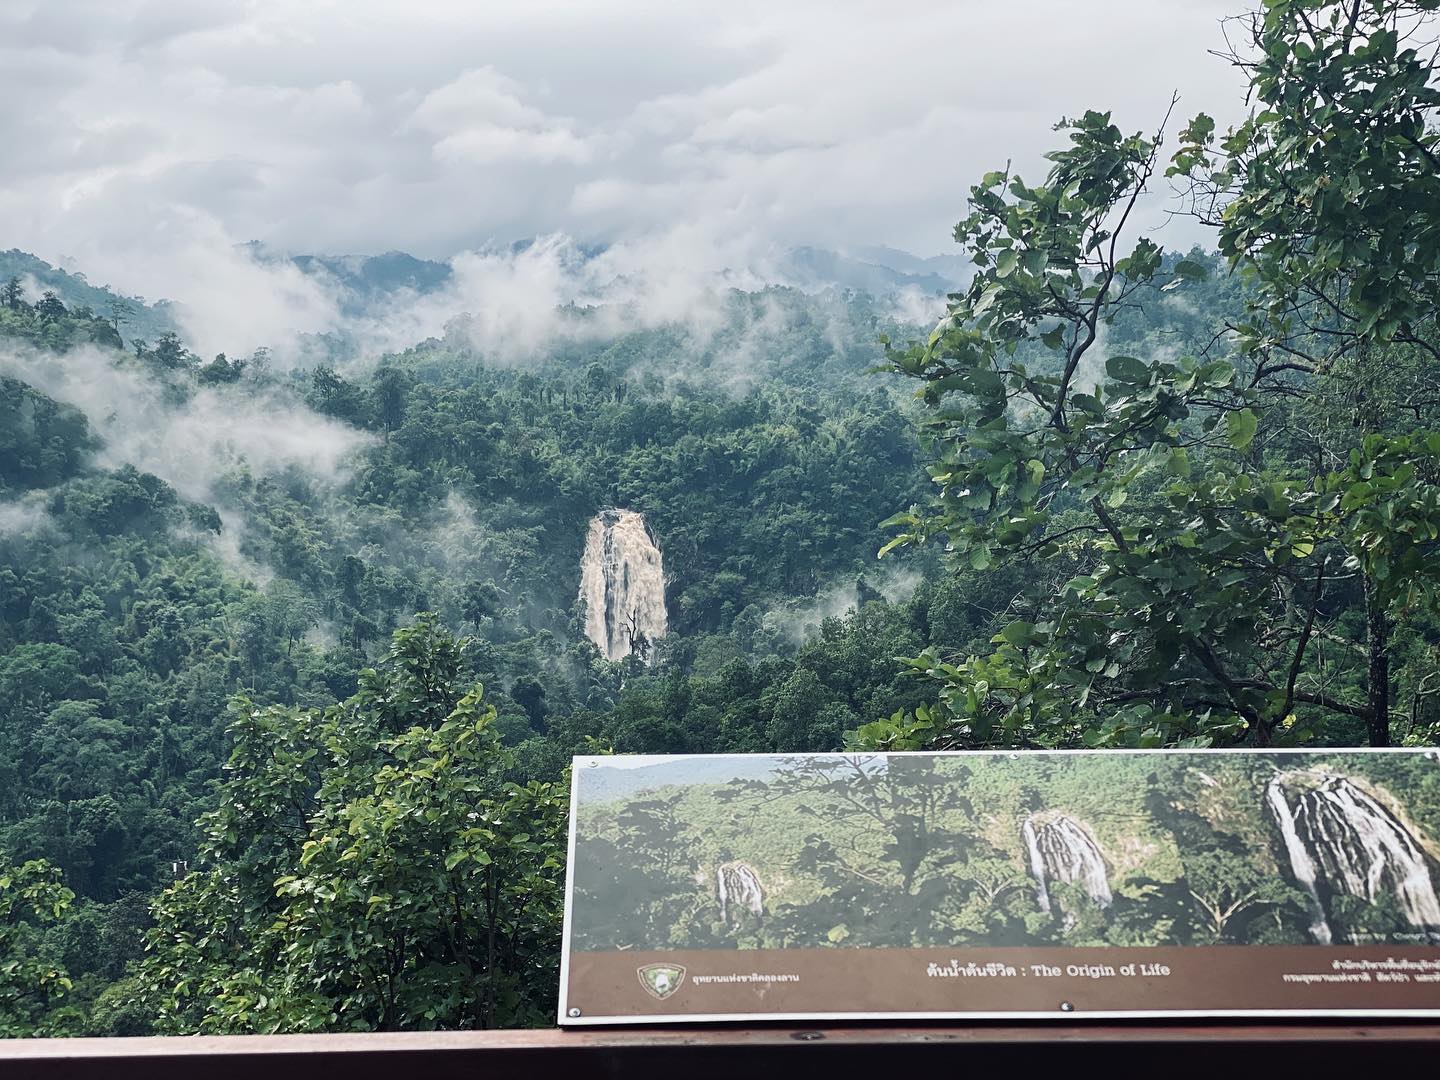 khlong lan national park - kio nguang chang viewpoint